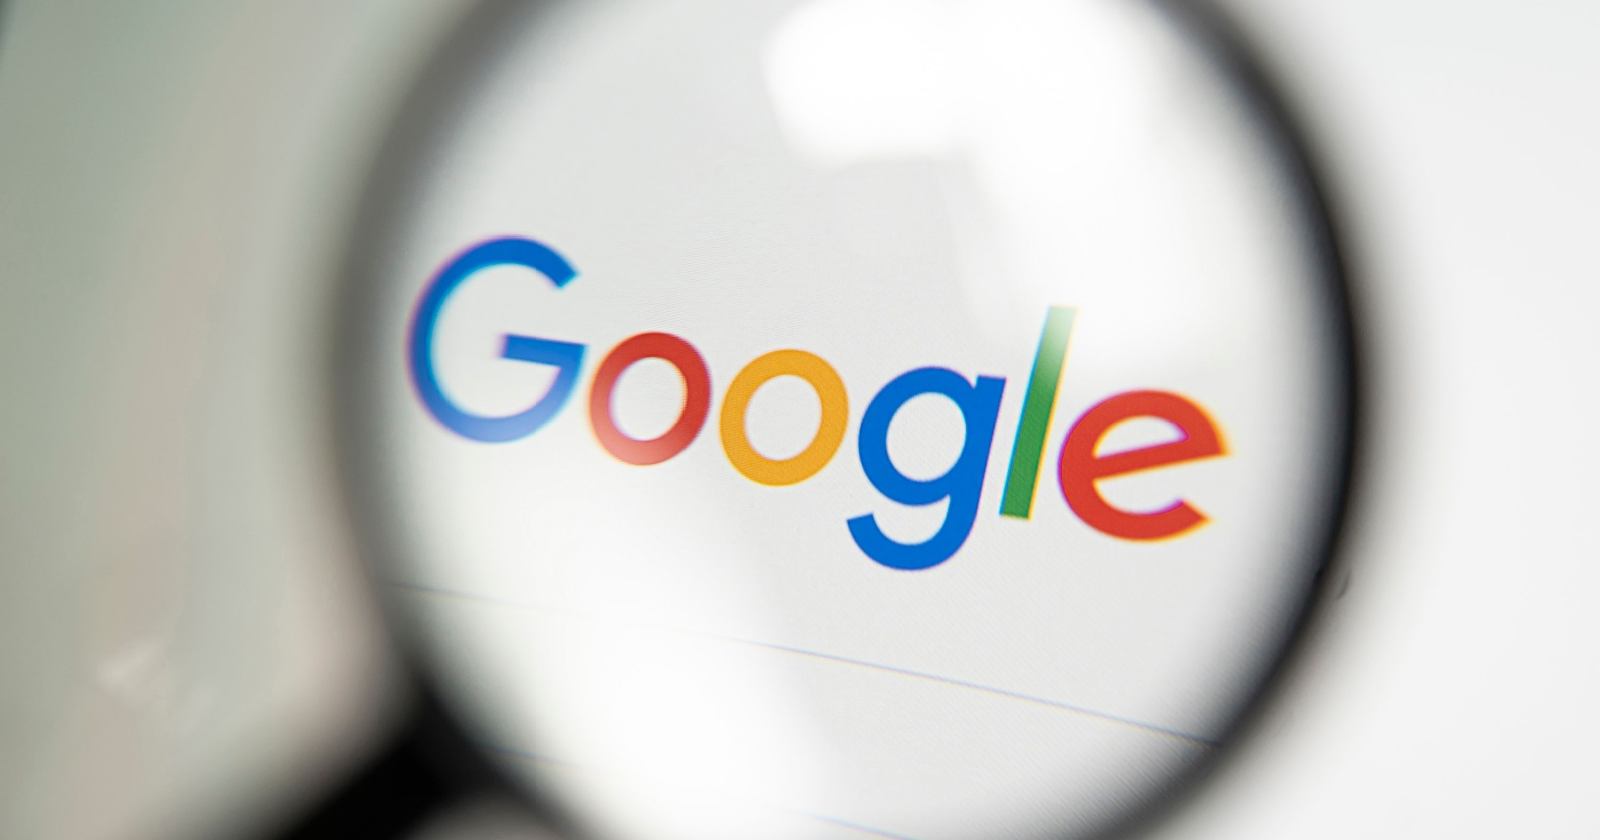 Google betalar 62 miljoner dollar i kompensation för platsspårning utan samtycke